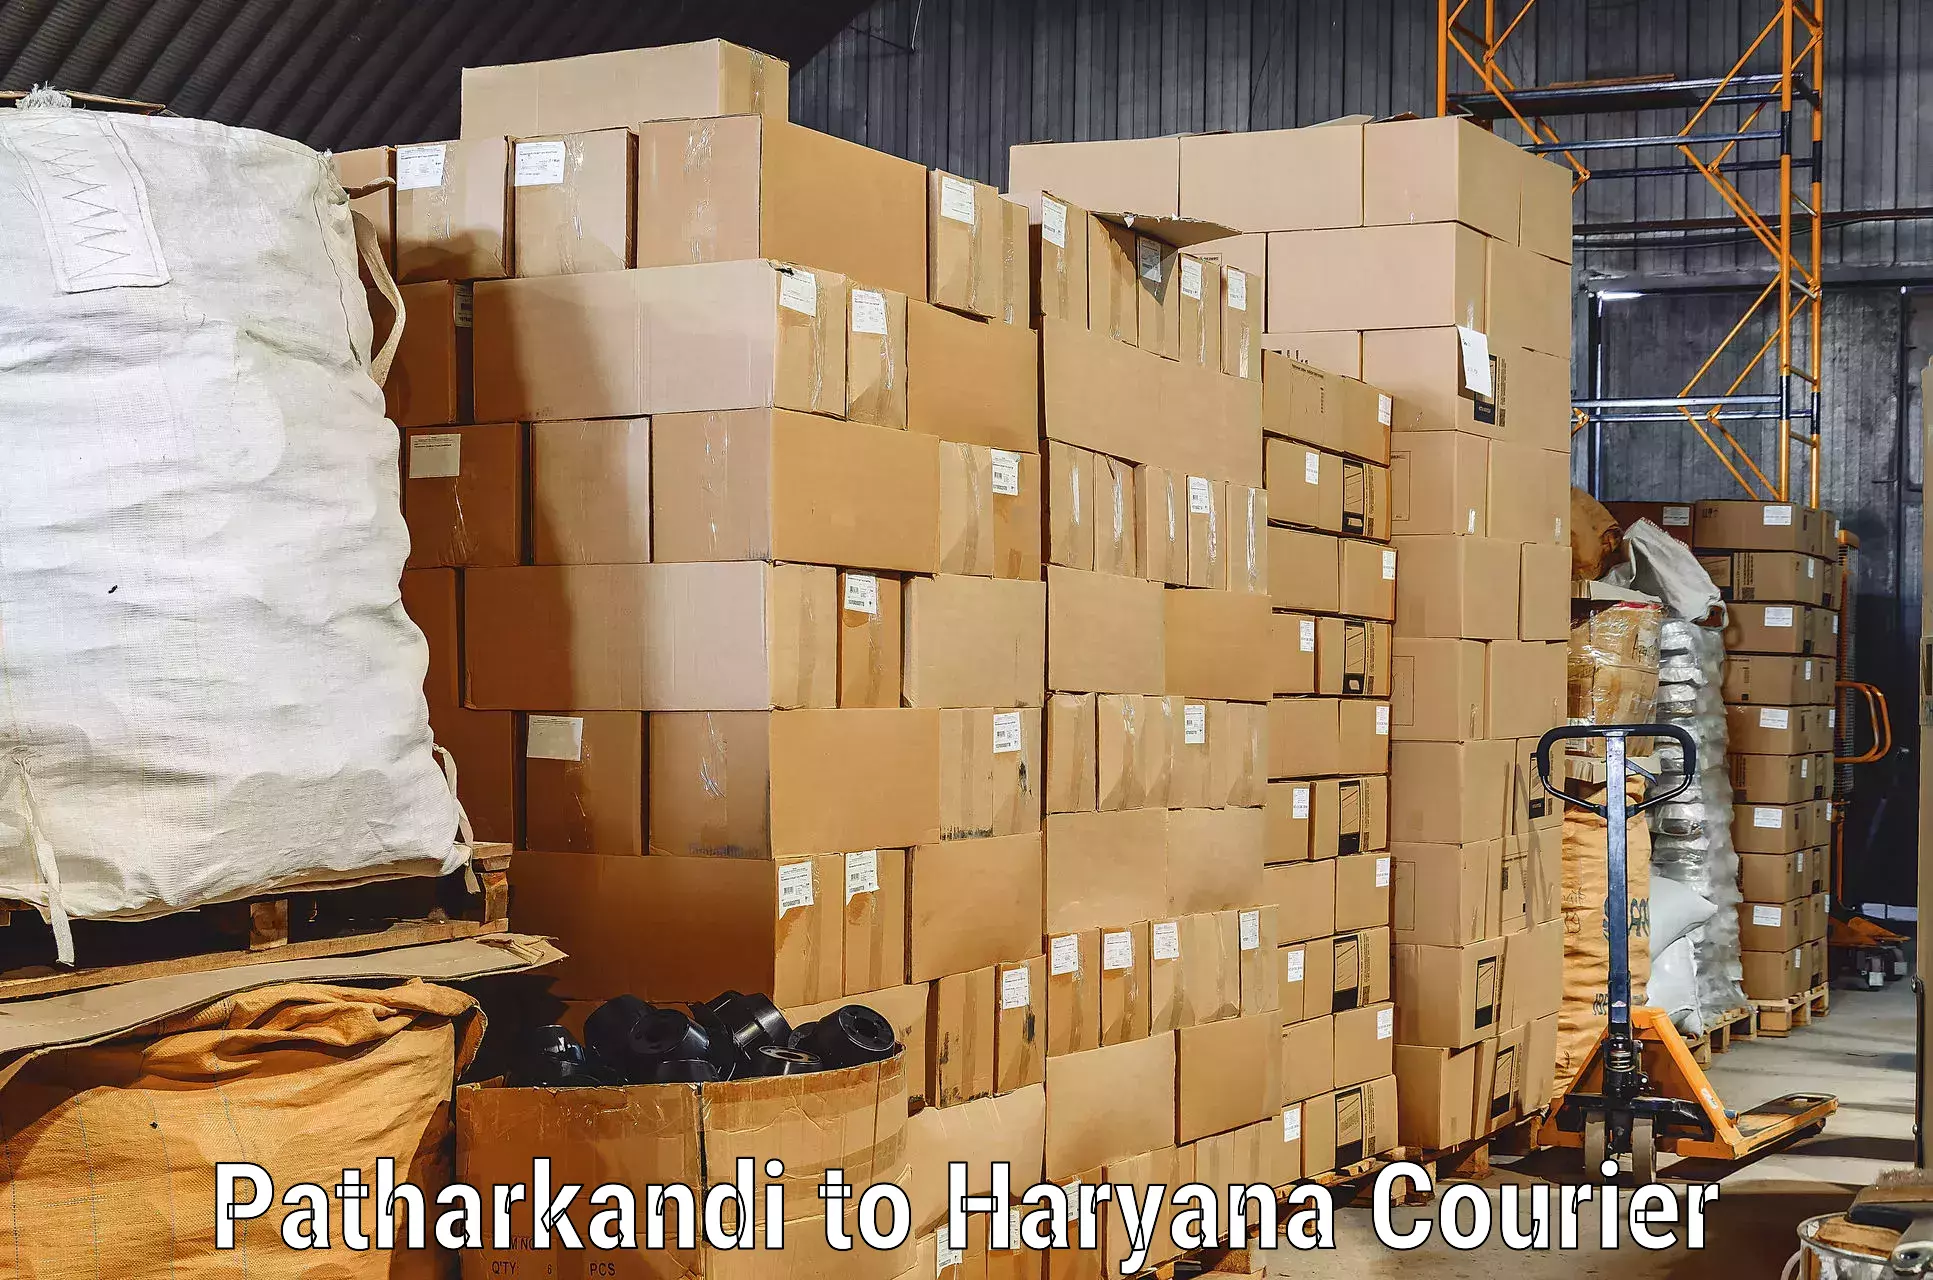 Safe home moving Patharkandi to NCR Haryana